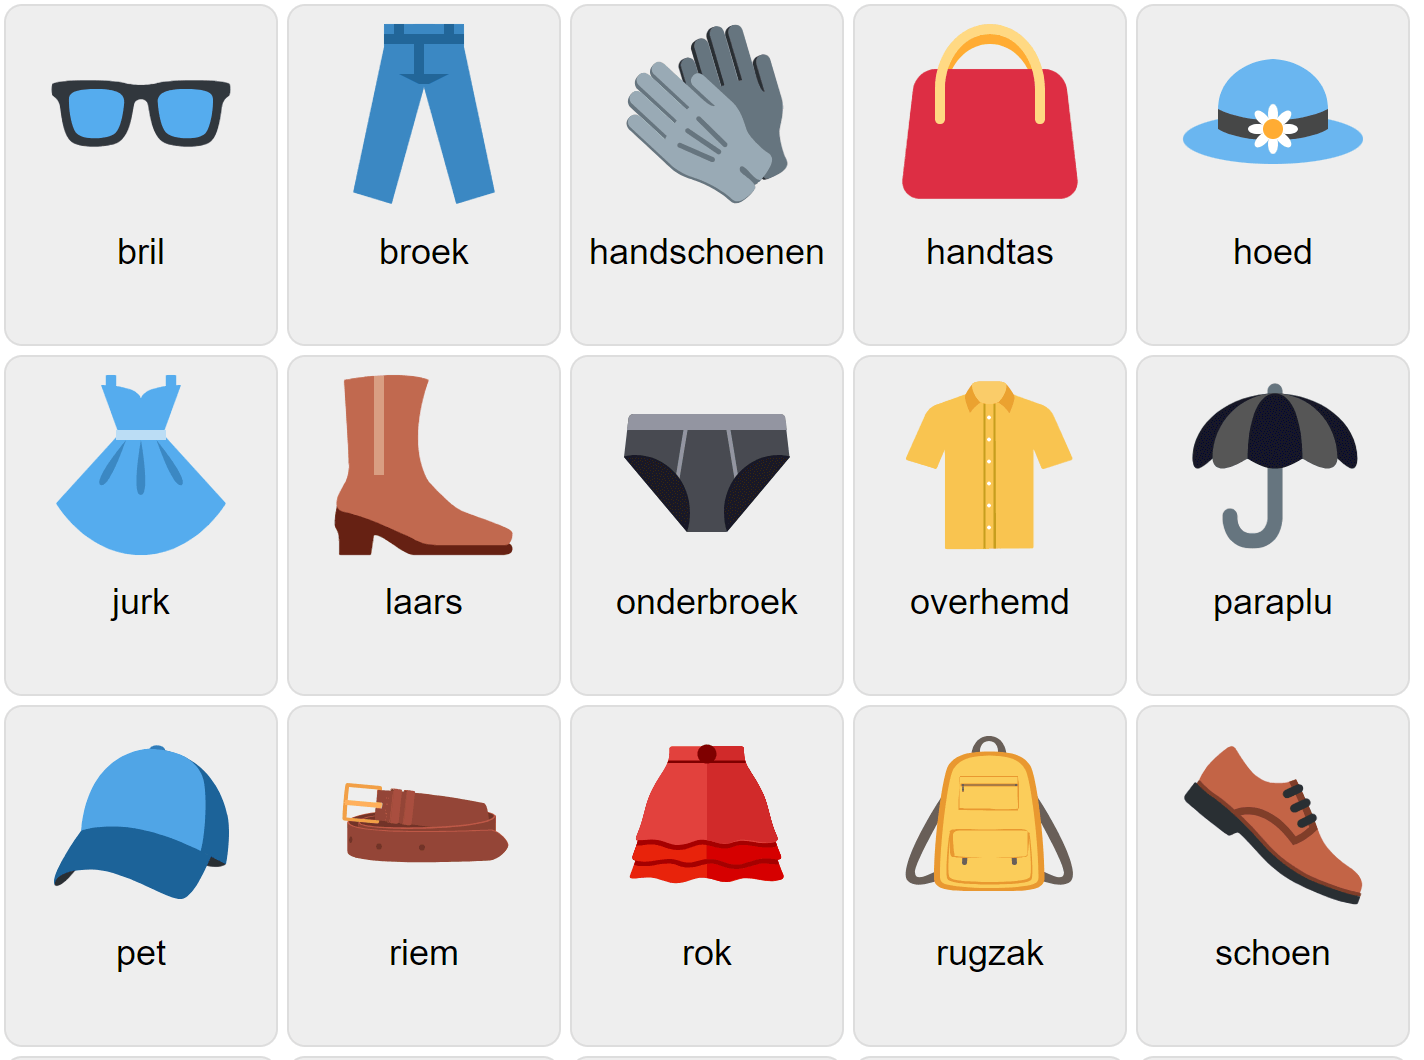 Одежда на голландском языке